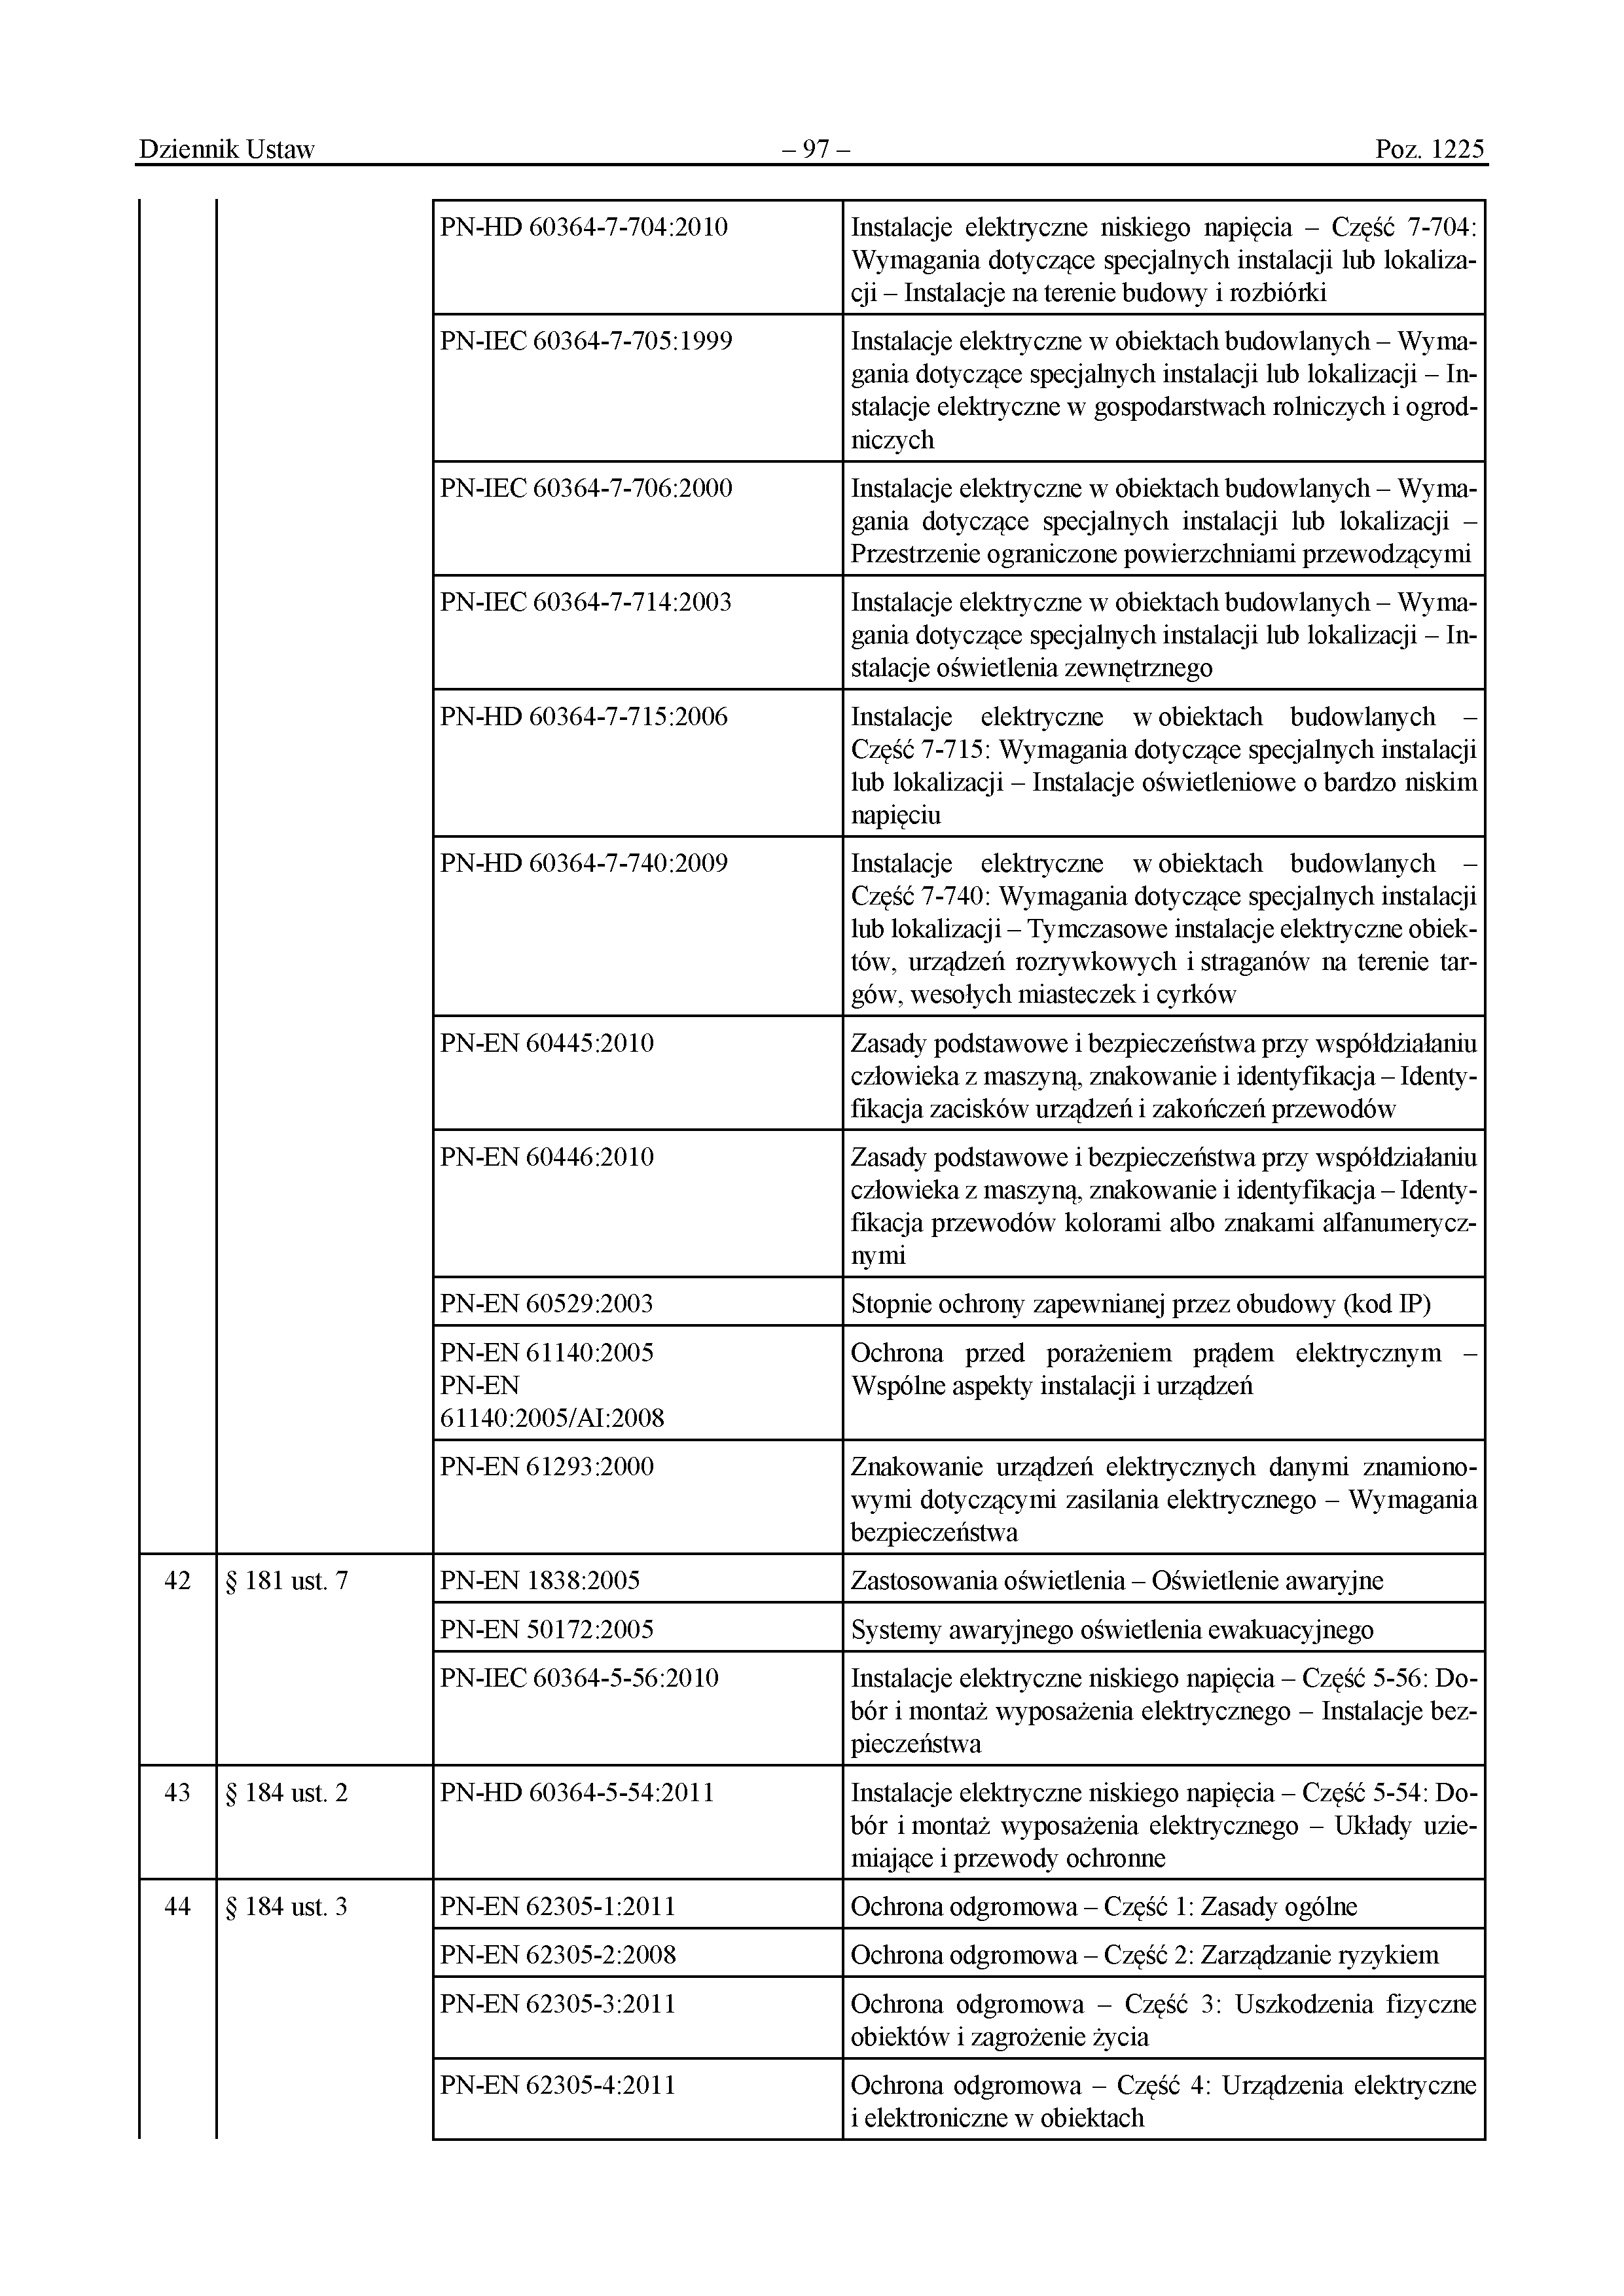 Wykaz polskich norm przywołanych w rozporządzeniu (s.8/13) - Załącznik do rozporządzenia Ministra Rozwoju i Technologii z dnia 12 kwietnia 2002 r. 